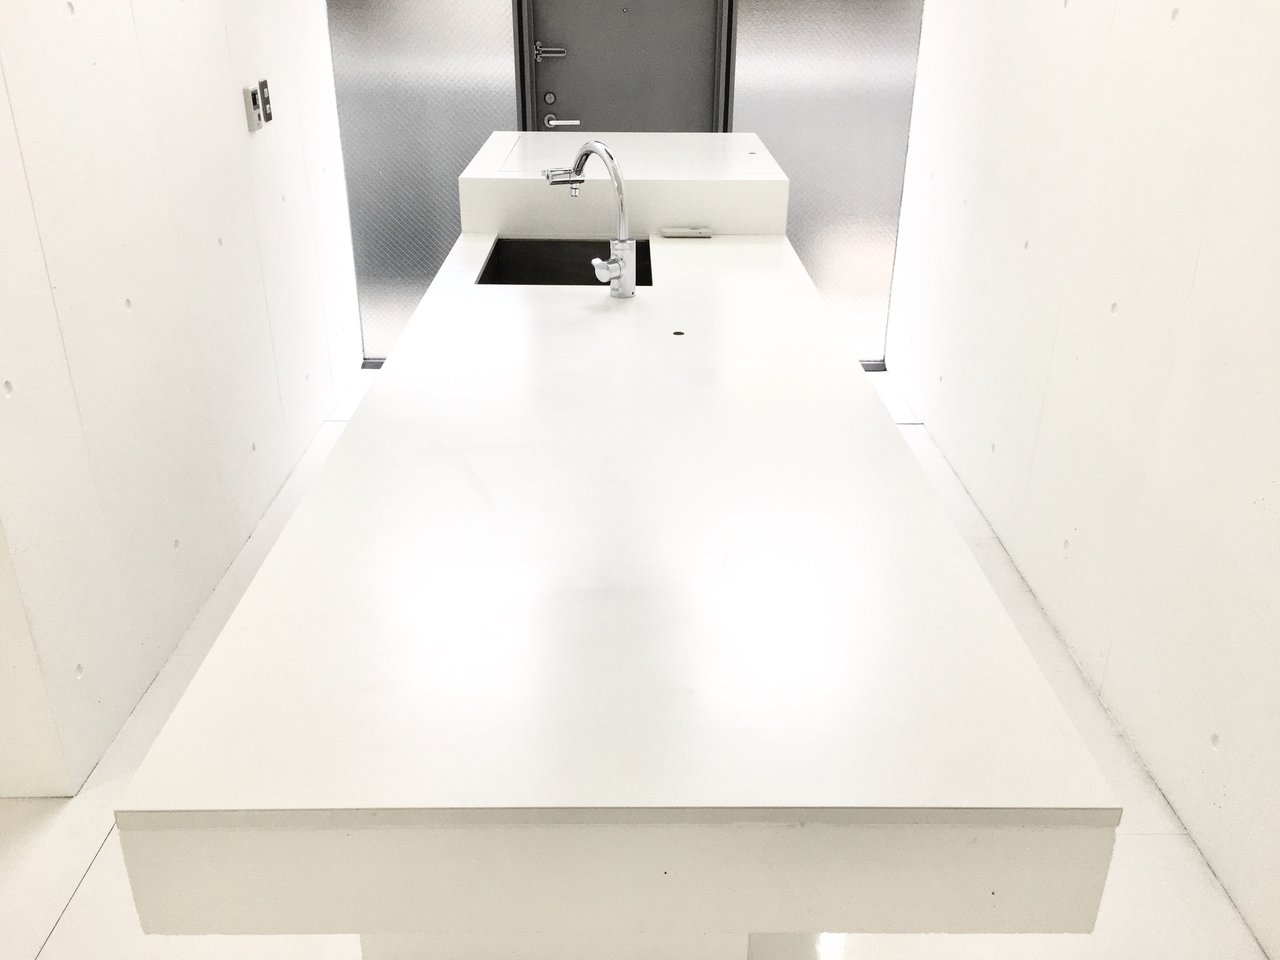 ゆったりとした広さのあるキッチン台は、作業スペースとはもちろん、ダイニングテーブルや仕事をする際のデスクとしても使えそうです。